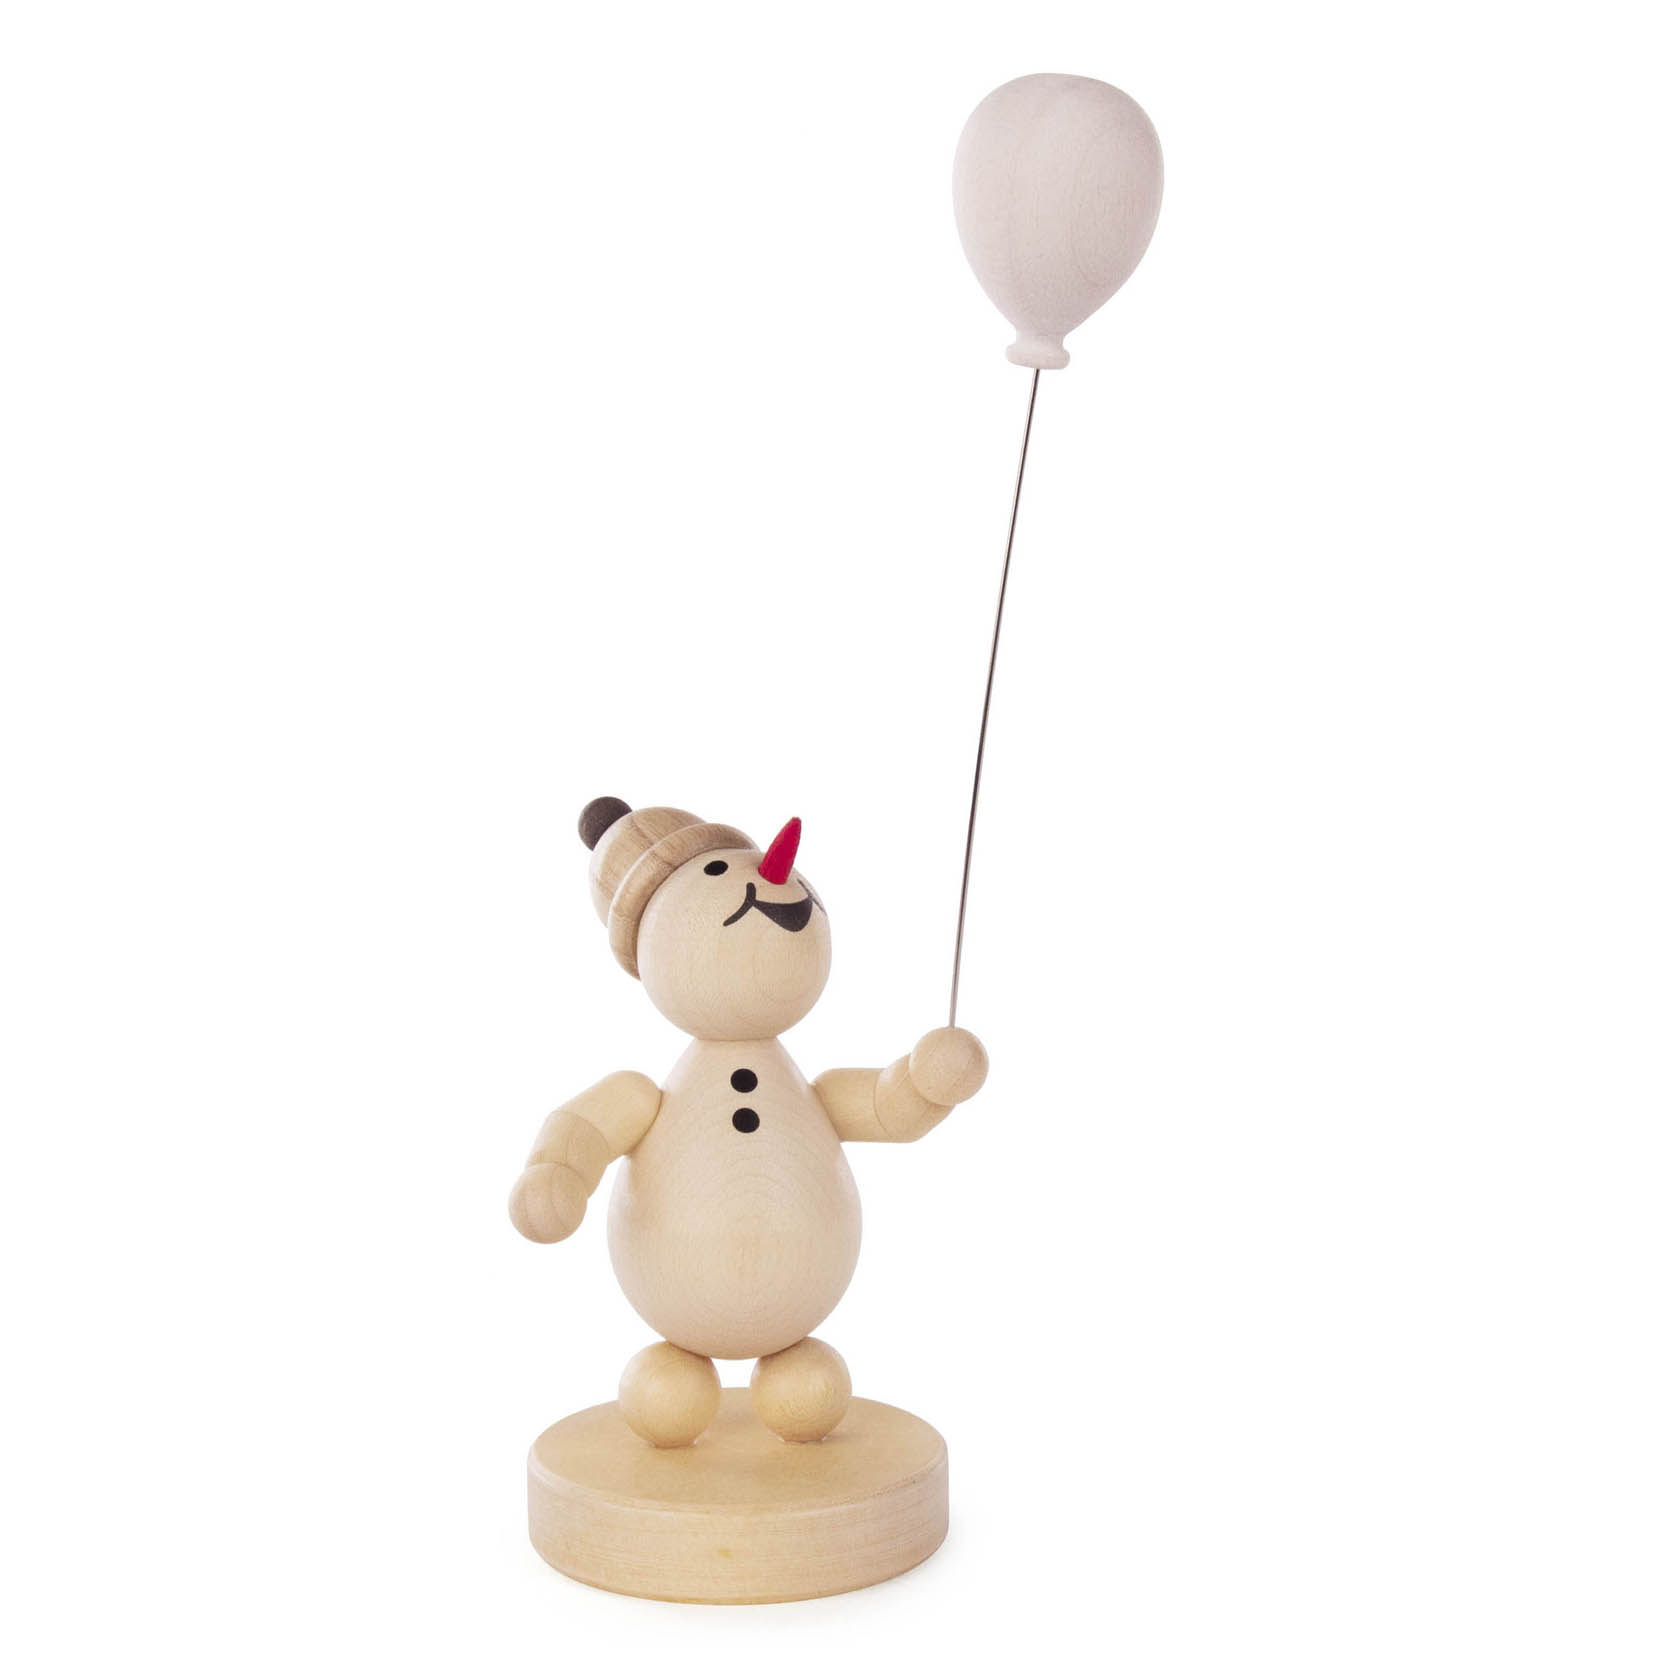 Schneemann Junior mit Luftballon im Dregeno Online Shop günstig kaufen